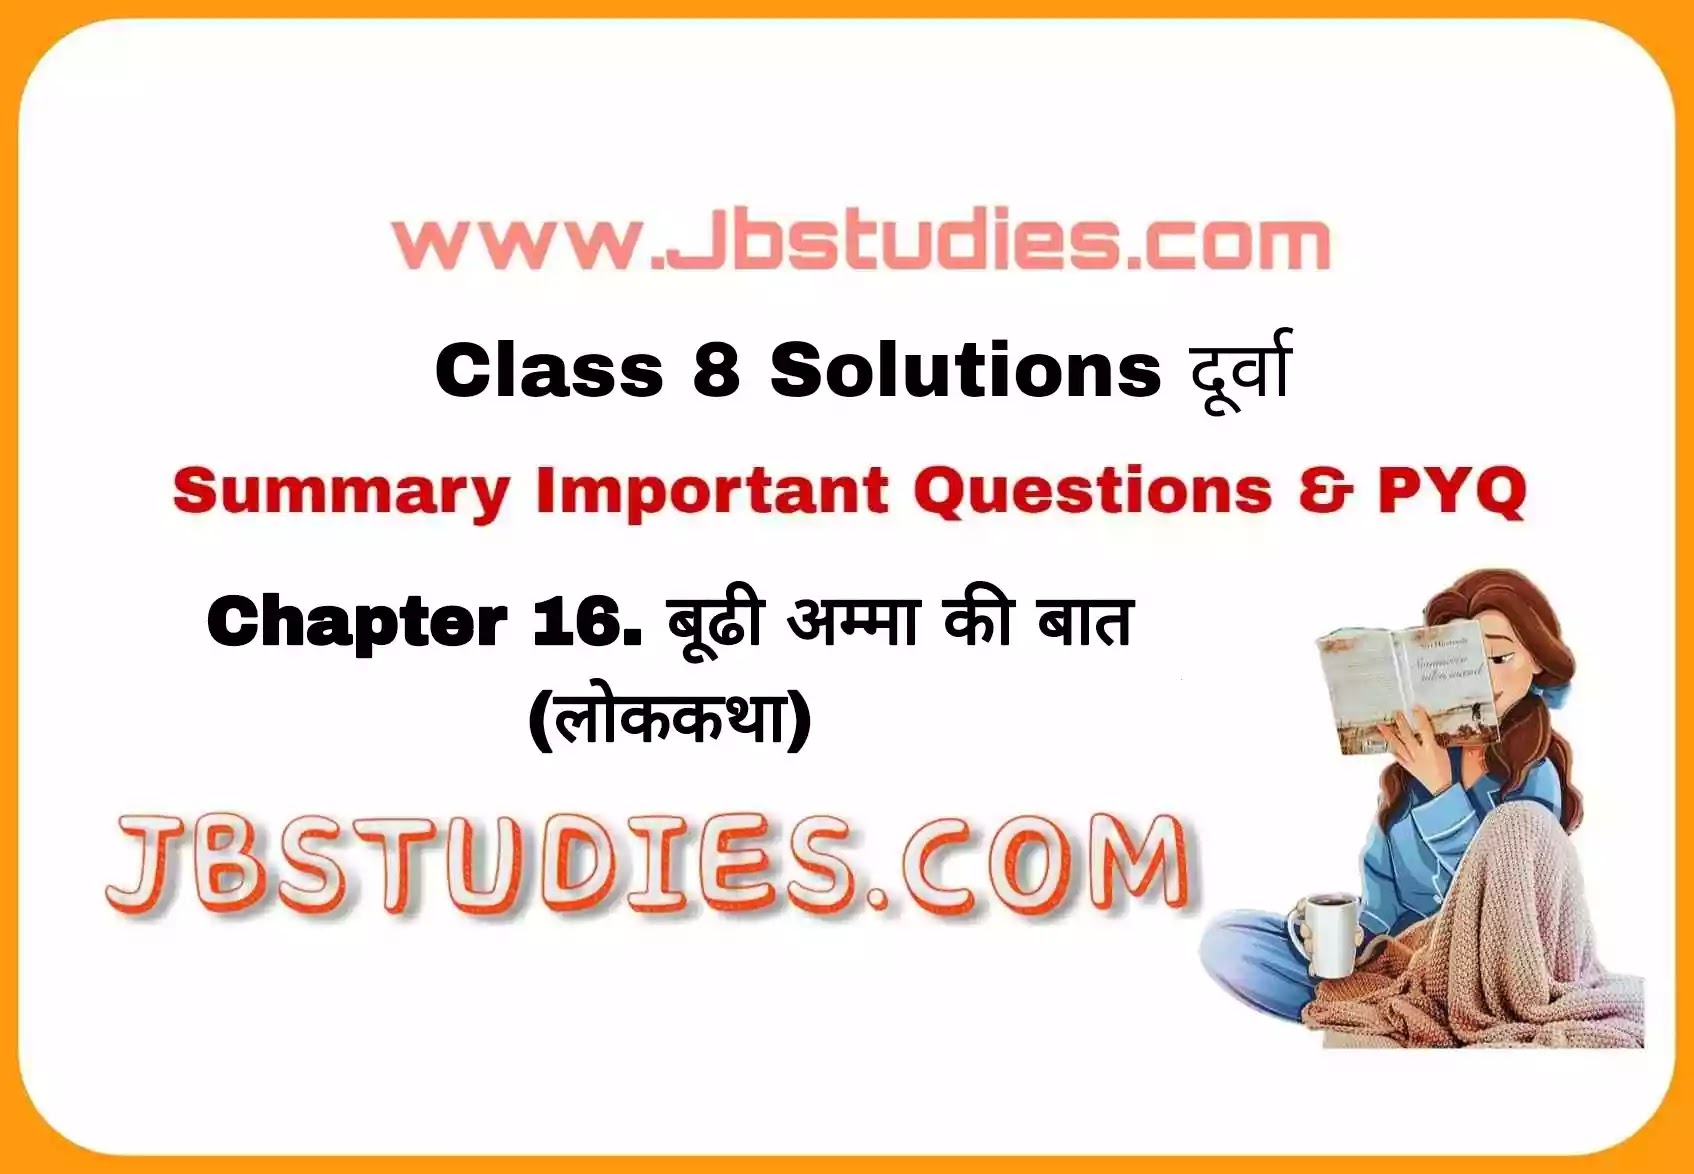 Solutions Class 8 दूर्वा Chapter-16 (बूढ़ी अम्मा की बात (लोककथा)